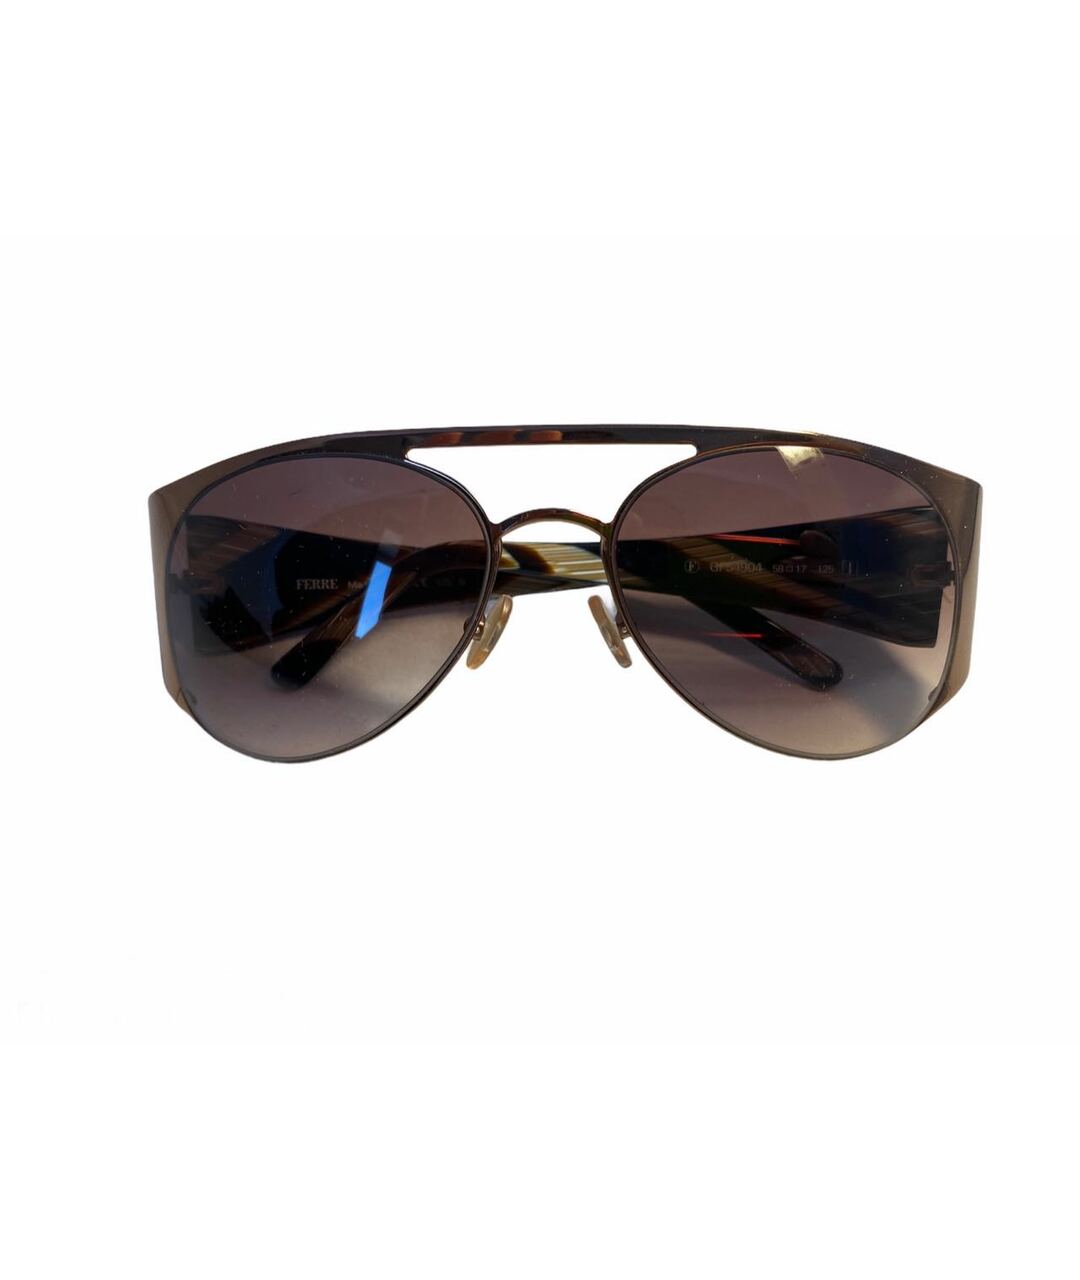 GIANFRANCO FERRE VINTAGE Коричневые металлические солнцезащитные очки, фото 1